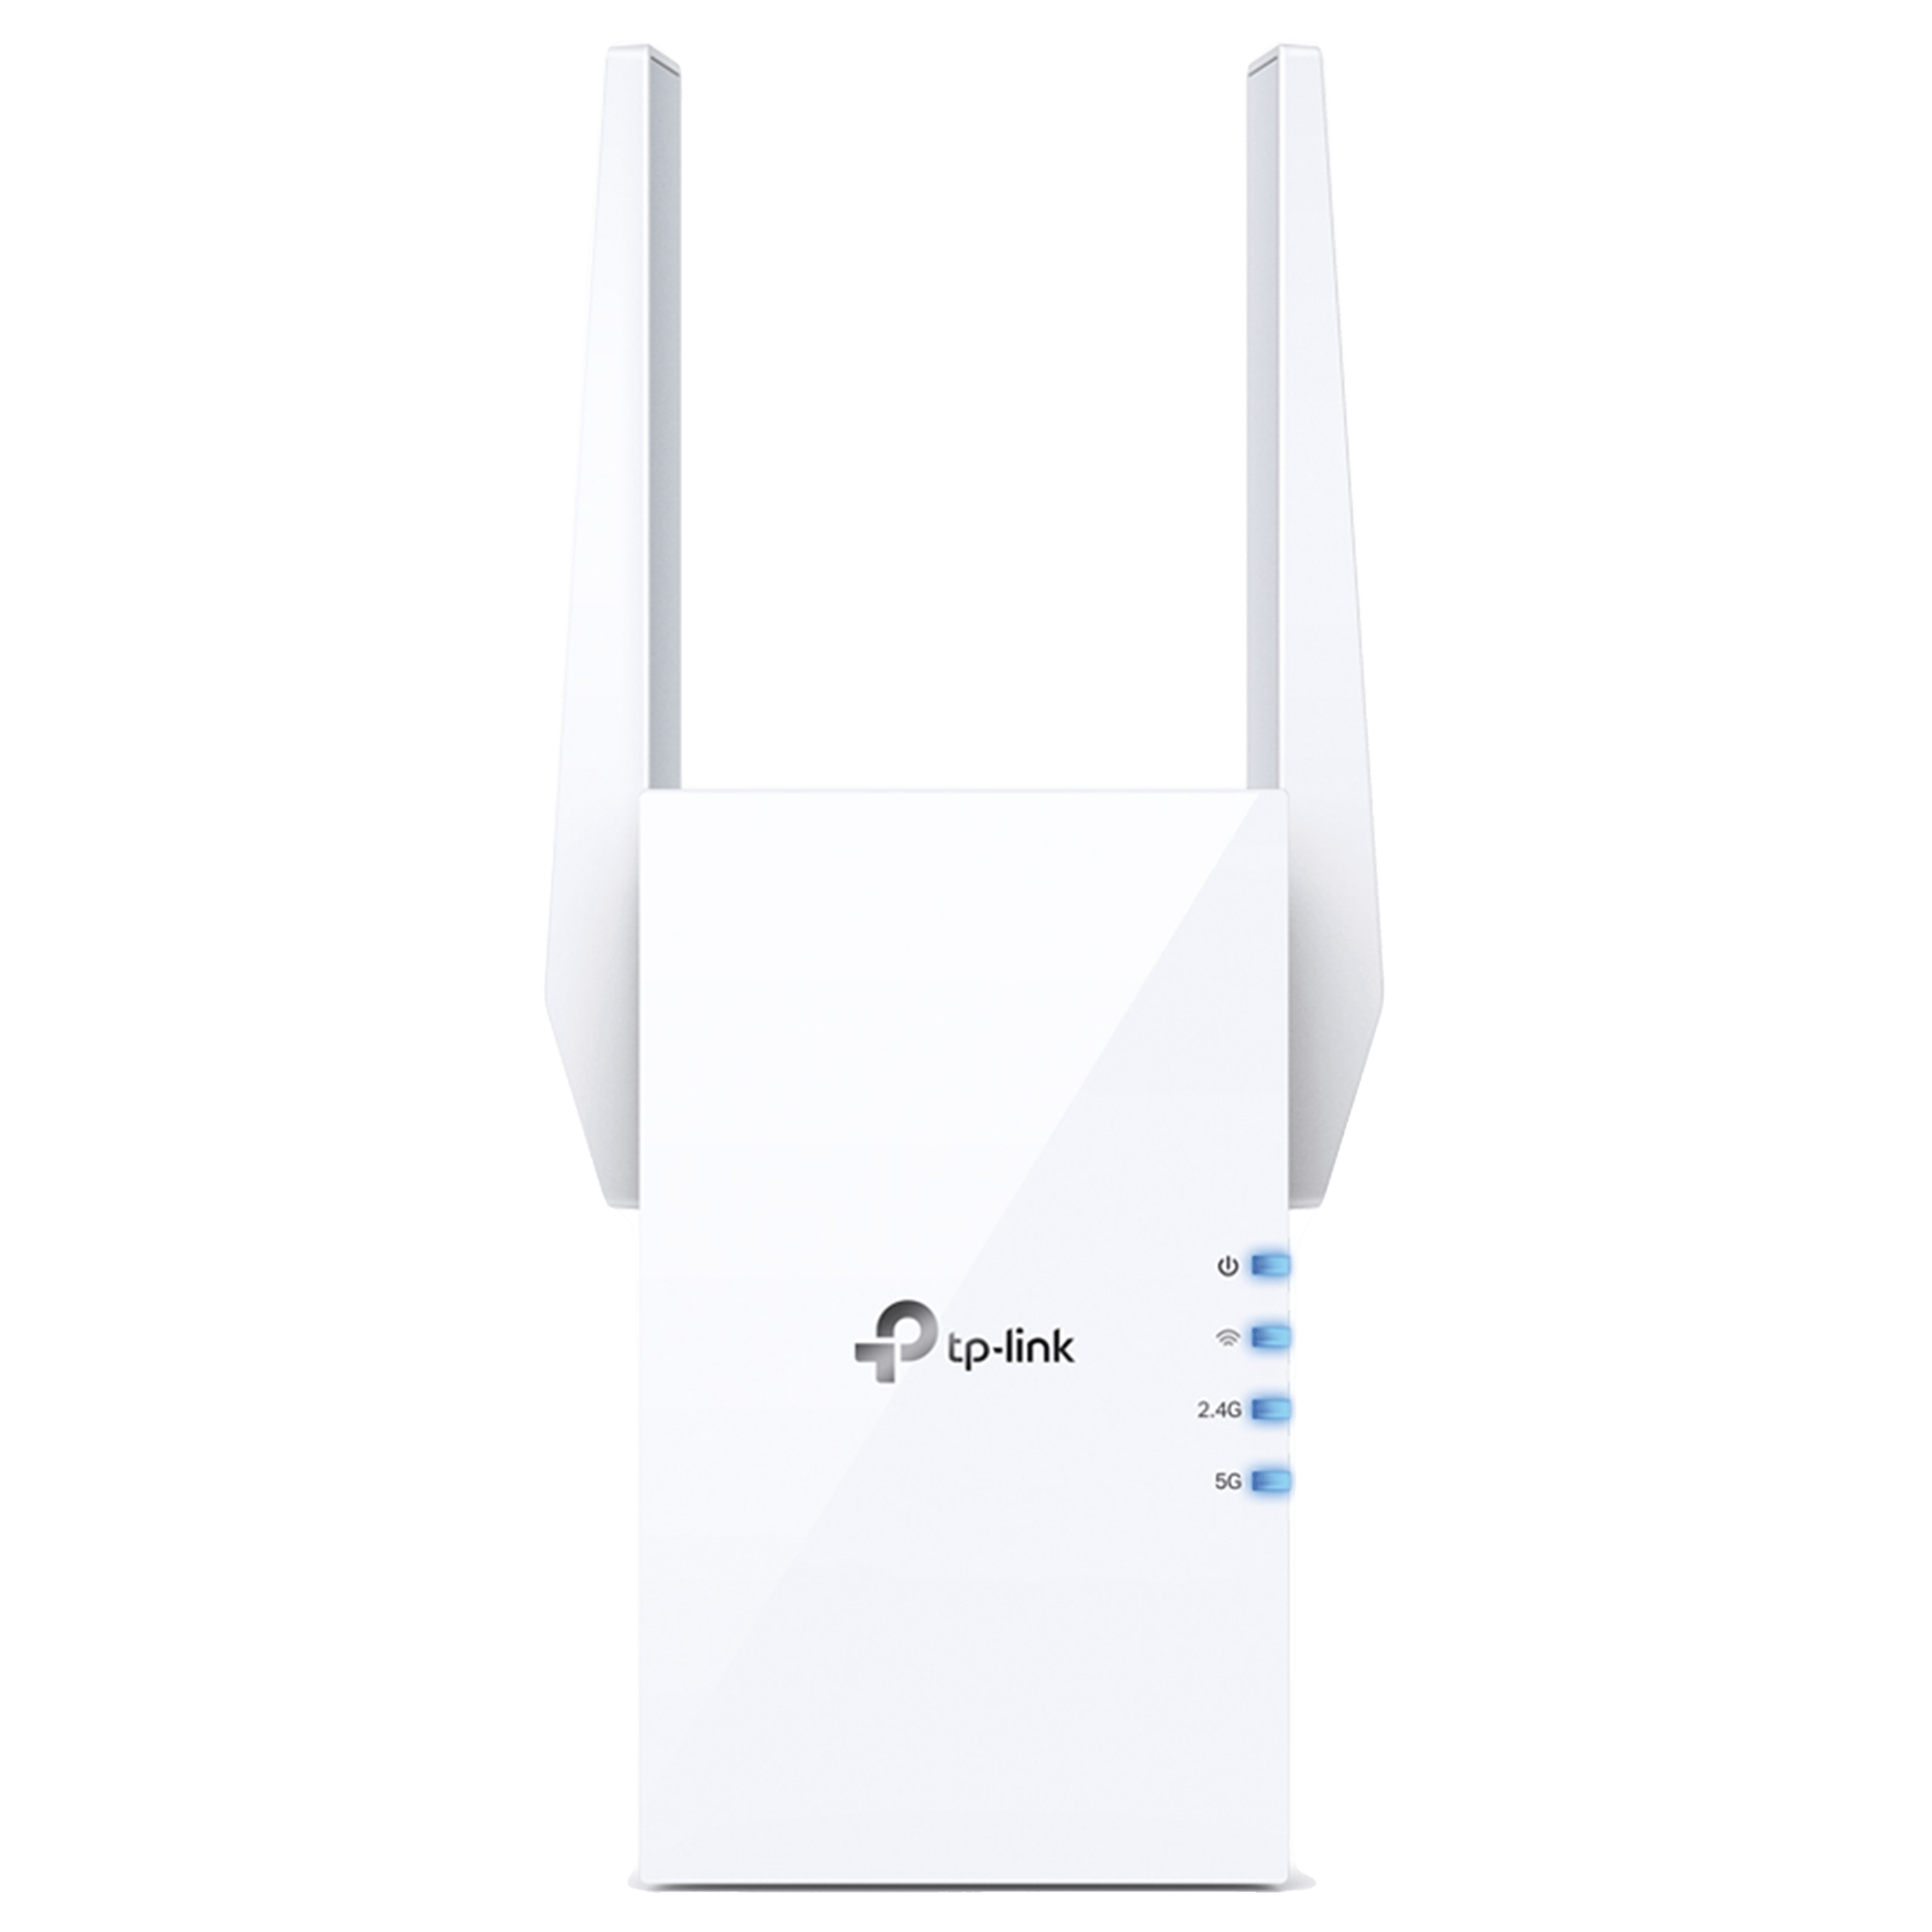 جهاز توسعة نطاق الانترنت TP-Link RE505X AX1500 Wi-Fi 6 Range Extender - בلون أبيض ضمان ثلاث سنوات من المستورد الرسمي